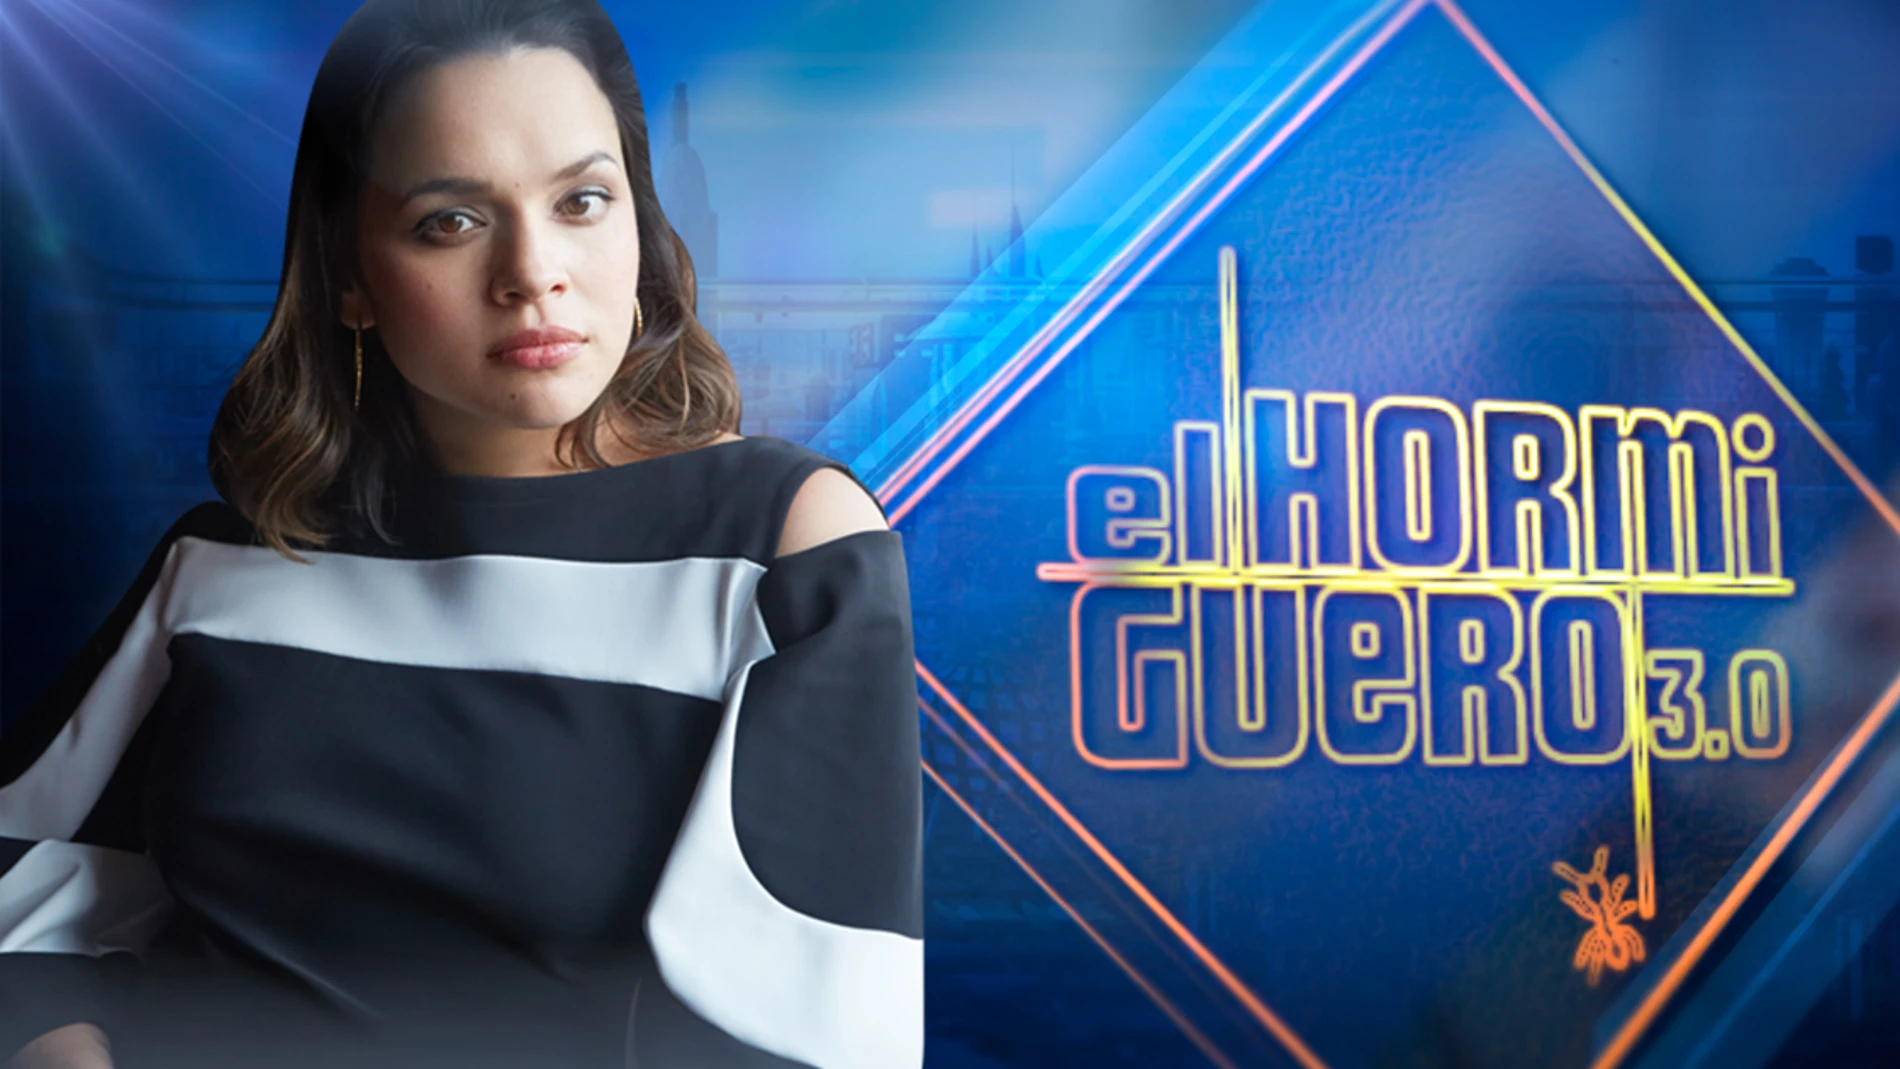 La cantante, compositora y música Norah Jones visitará 'El Hormiguero 3.0' el jueves